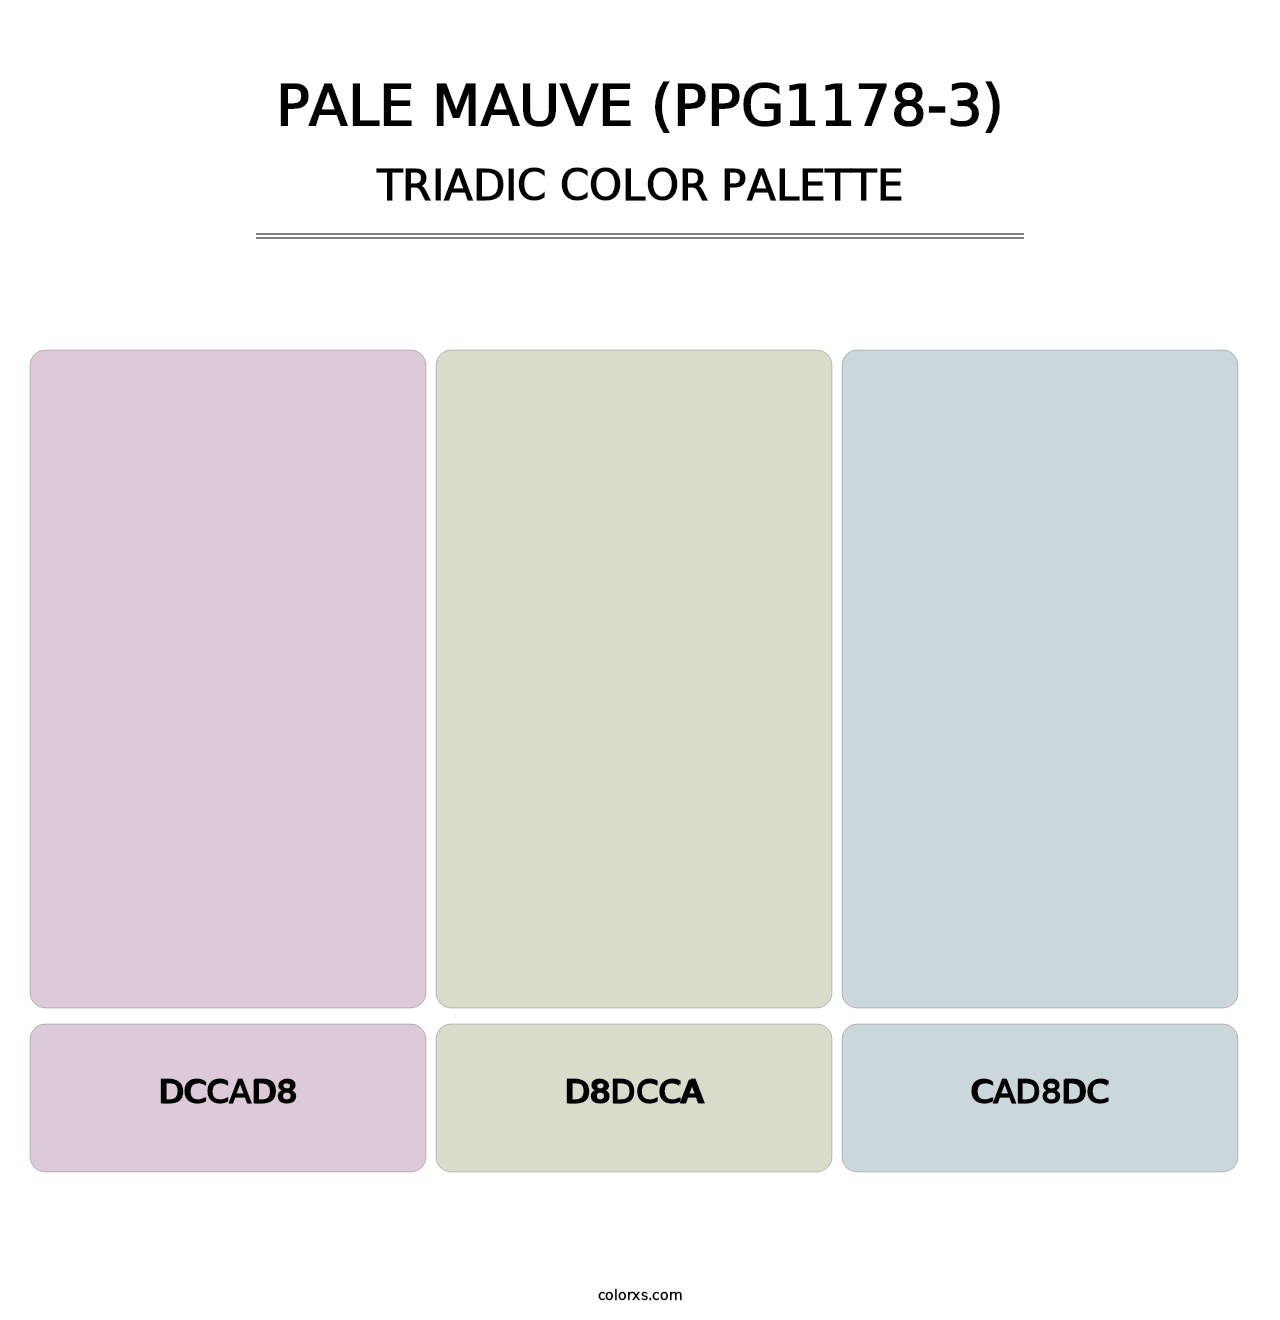 Pale Mauve (PPG1178-3) - Triadic Color Palette